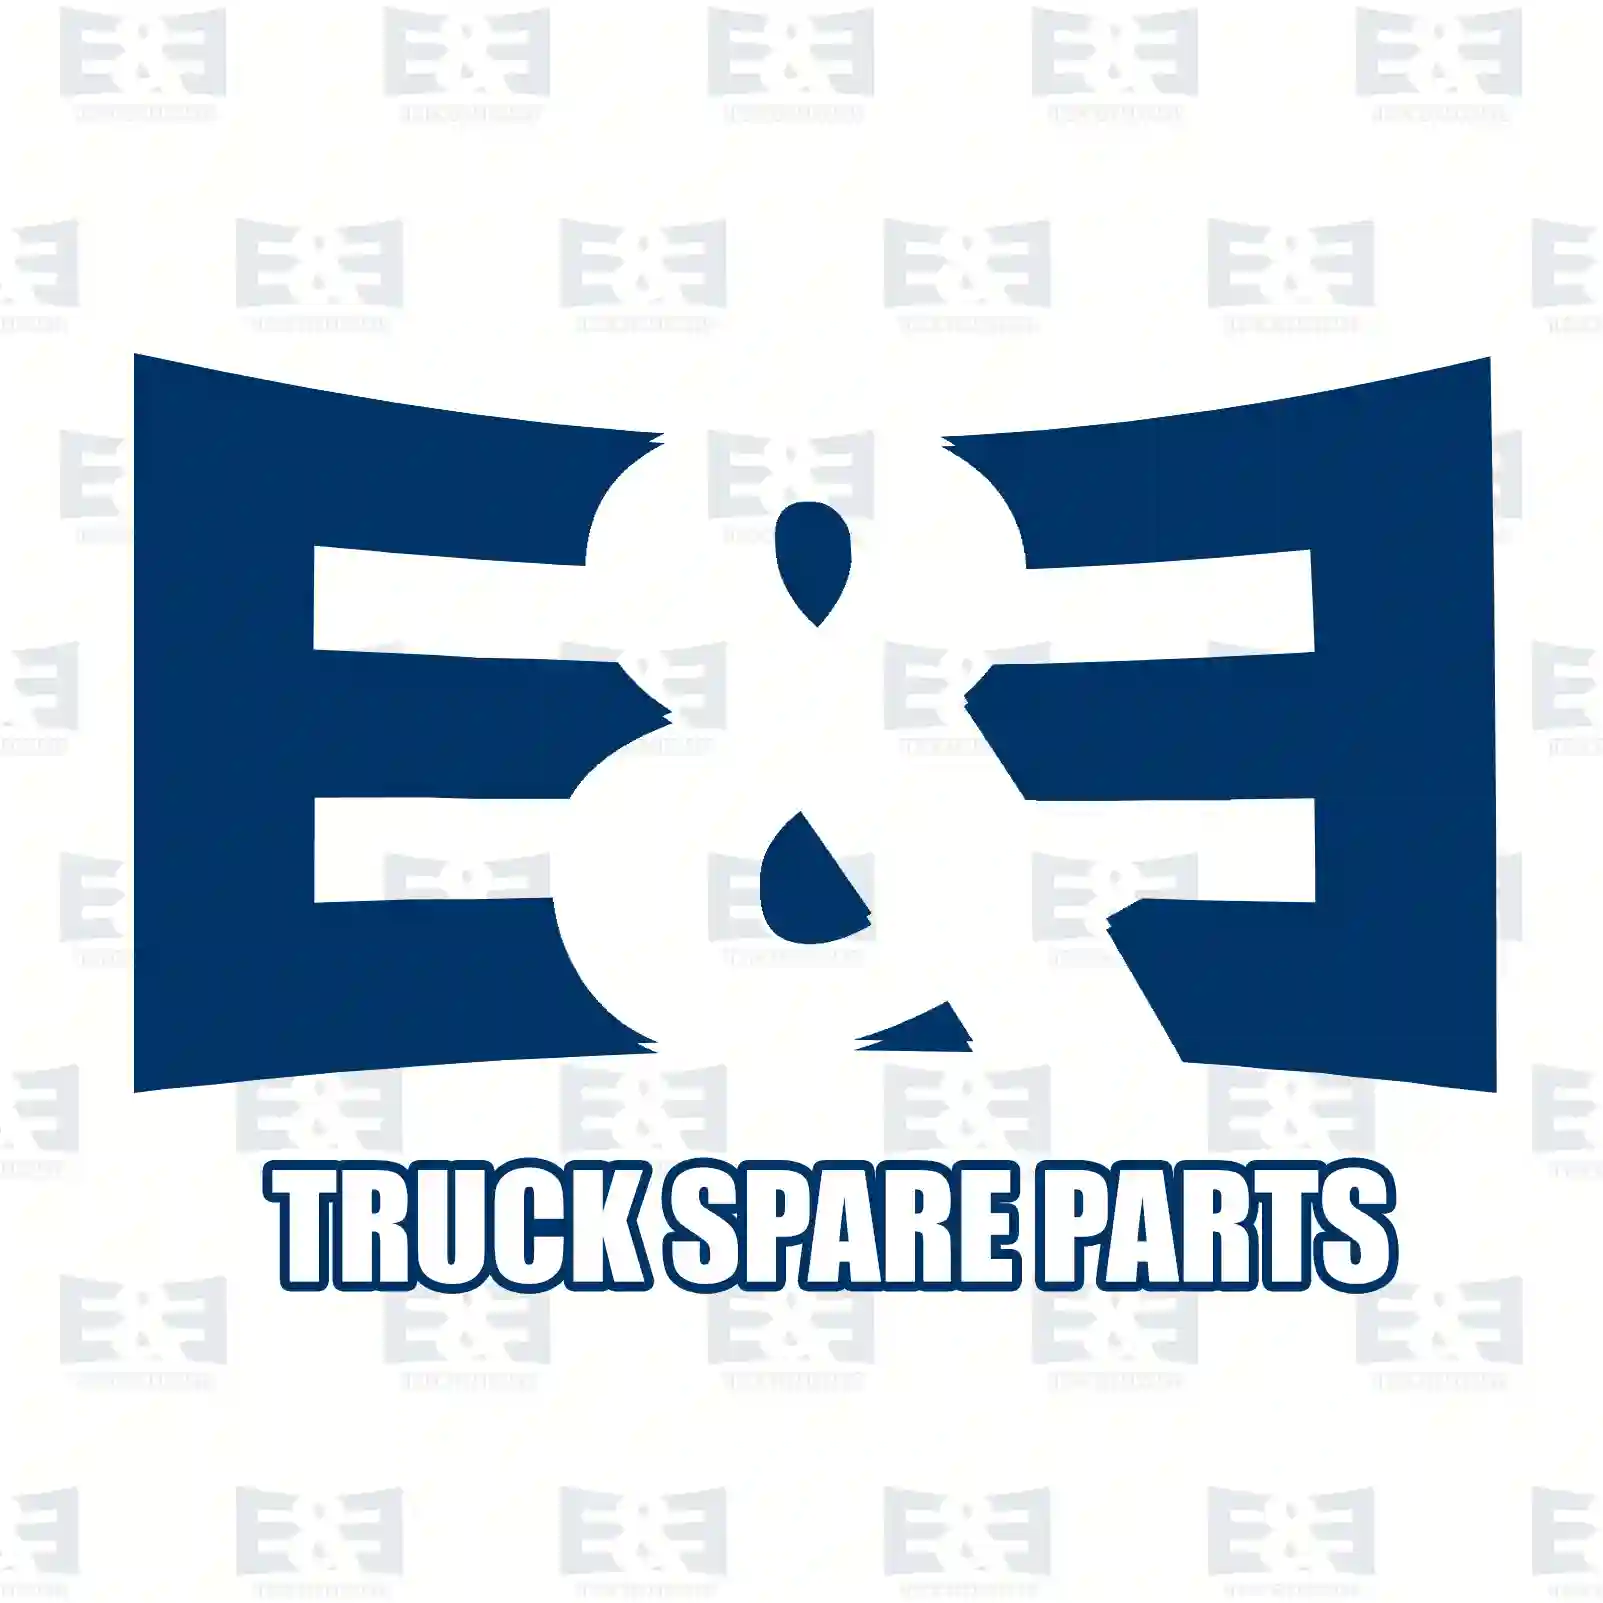 Adapter, 2E2297631, 5001866325, 20223957, ZG20211-0008 ||  2E2297631 E&E Truck Spare Parts | Truck Spare Parts, Auotomotive Spare Parts Adapter, 2E2297631, 5001866325, 20223957, ZG20211-0008 ||  2E2297631 E&E Truck Spare Parts | Truck Spare Parts, Auotomotive Spare Parts